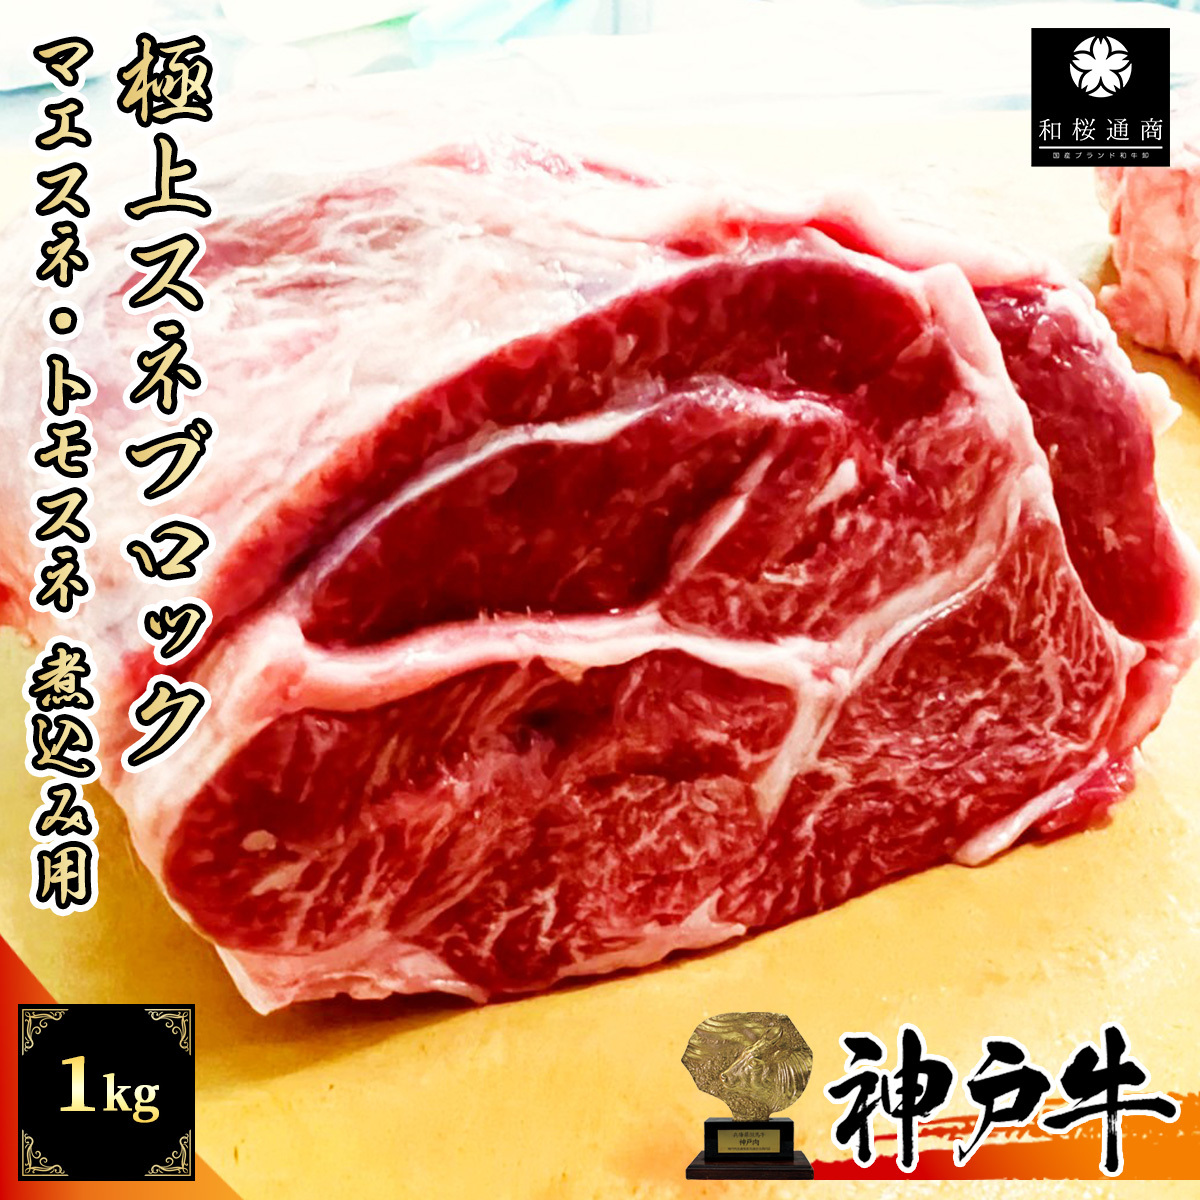 神戸牛 スネ肉 1kg 煮込み用ブロック カレーやポトフなどに<br>